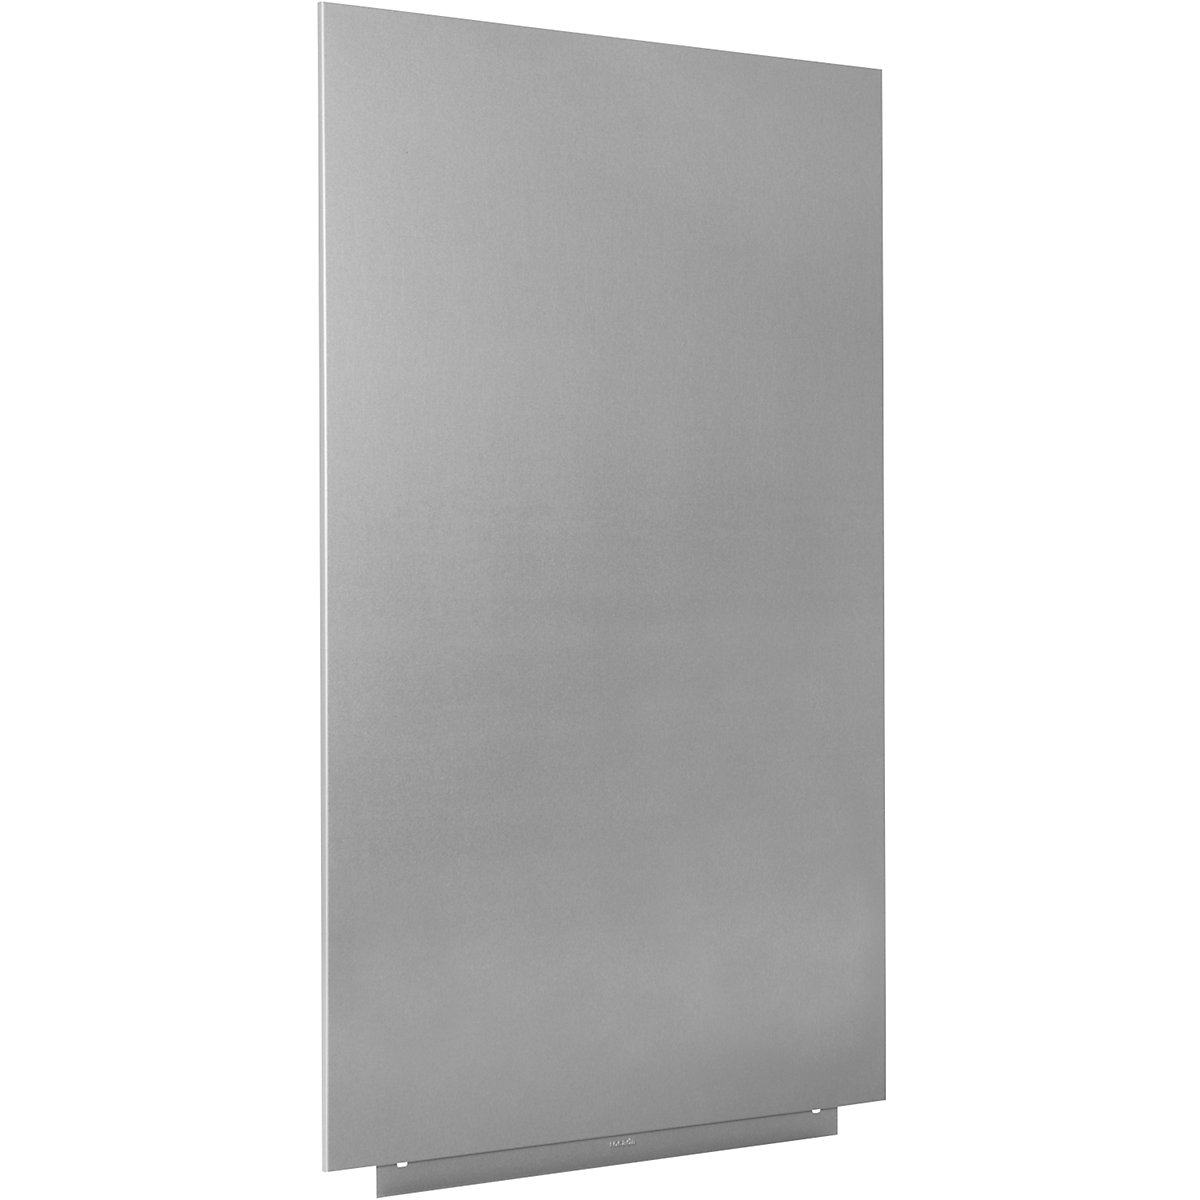 Whiteboardmodule, PRO-versie – plaatstaal, gecoat, b x h = 750 x 1150 mm, zilver-19